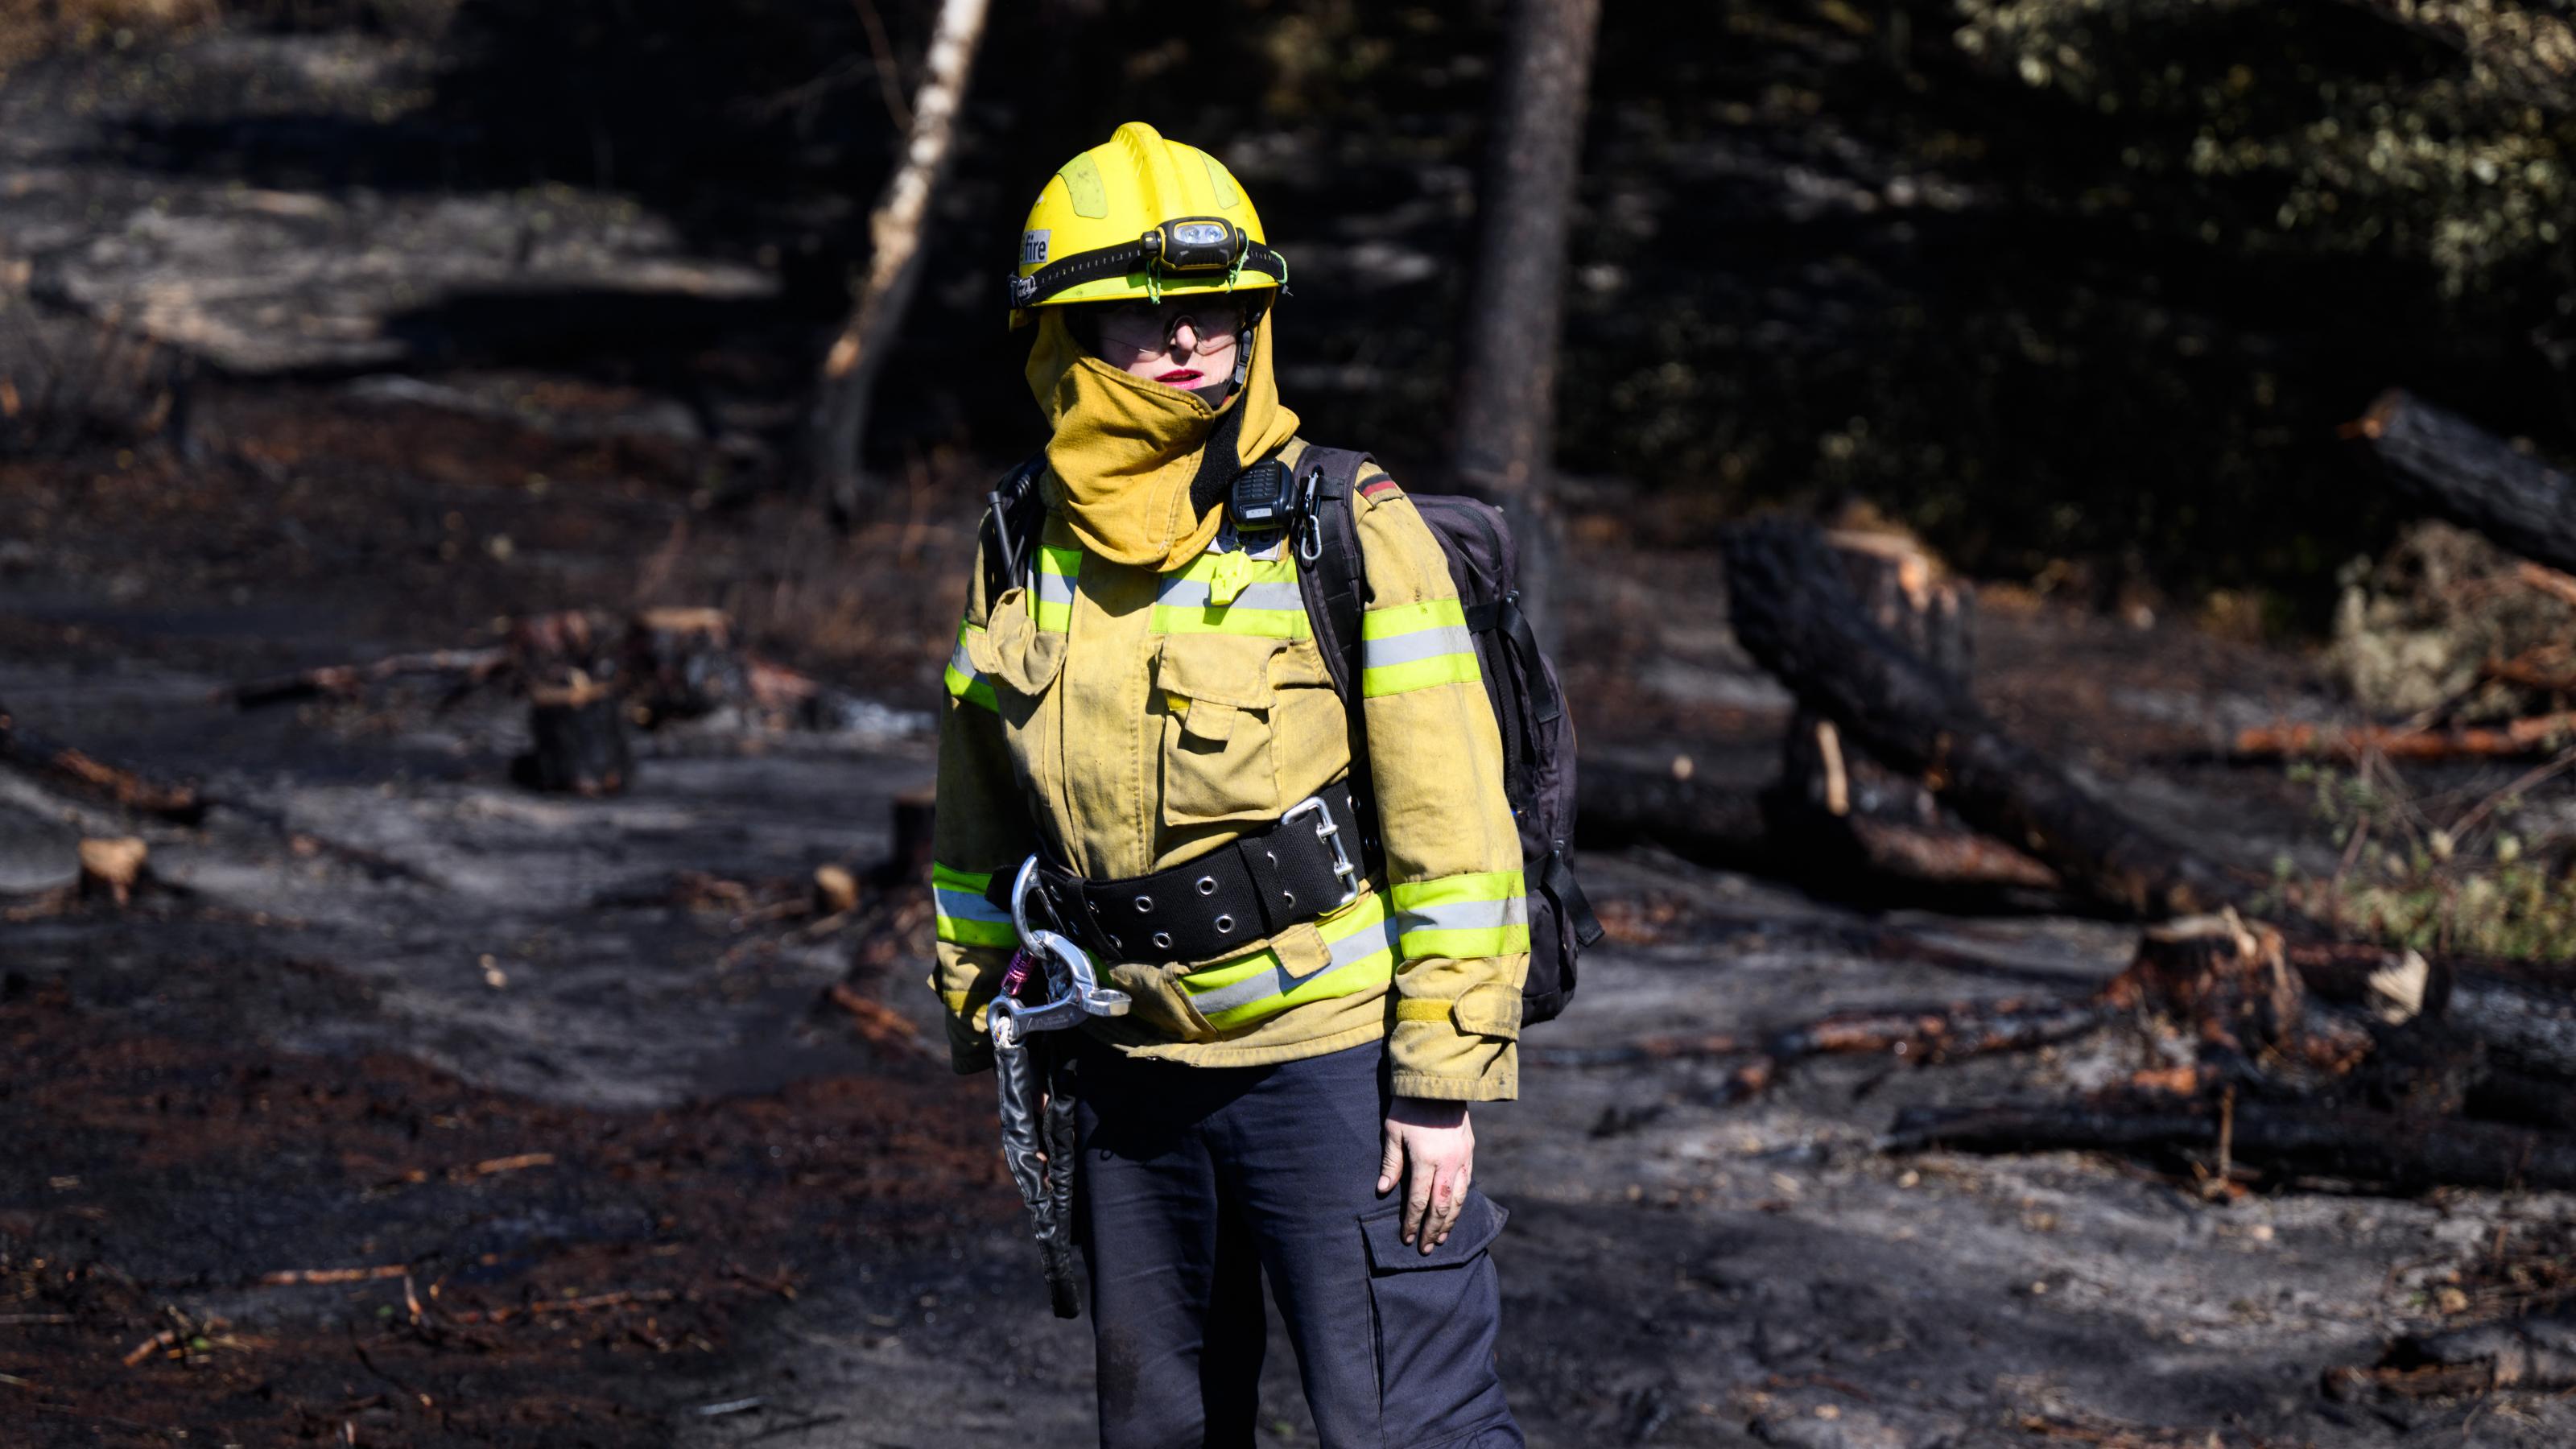 Julia Richardt, freiwillige Feuerwehrfrau bei dem Internationalen Katastrophenschutz Deutschland „@fire“ steht beim Einsatz gegen die Waldbrände im Nationalpark Sächsische Schweiz im Brandgebiet. Der Internationale Katastrophenschutz Deutschland e. V. ist eine gemeinnützige, nichtstaatliche Hilfsorganisation, die international Hilfe bei Naturkatastrophen leistet.